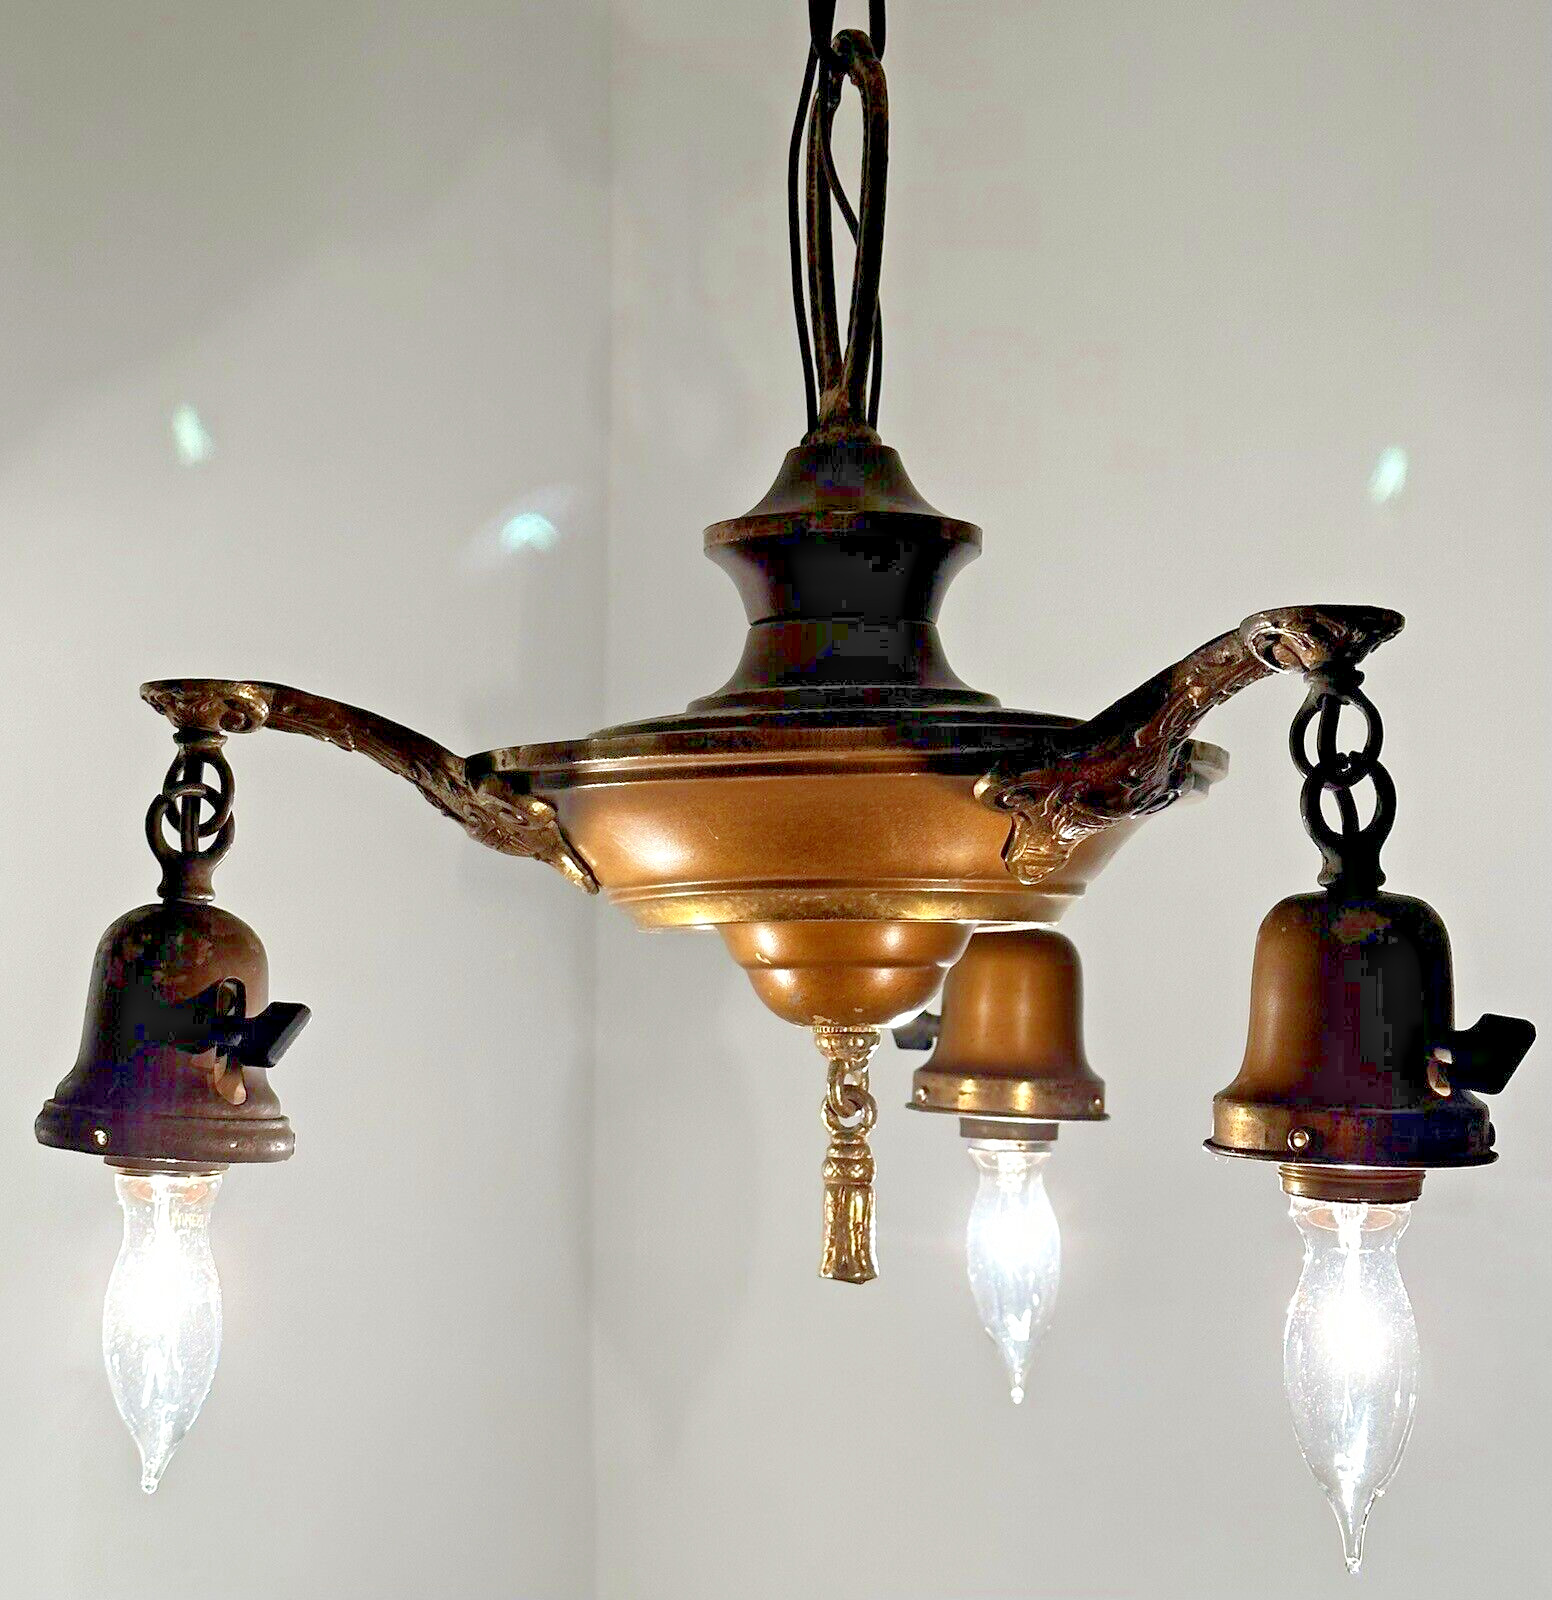 Art Deco Antique 3 Light Brass Pan Chandelier Light Ceiling Fixture Working Cond